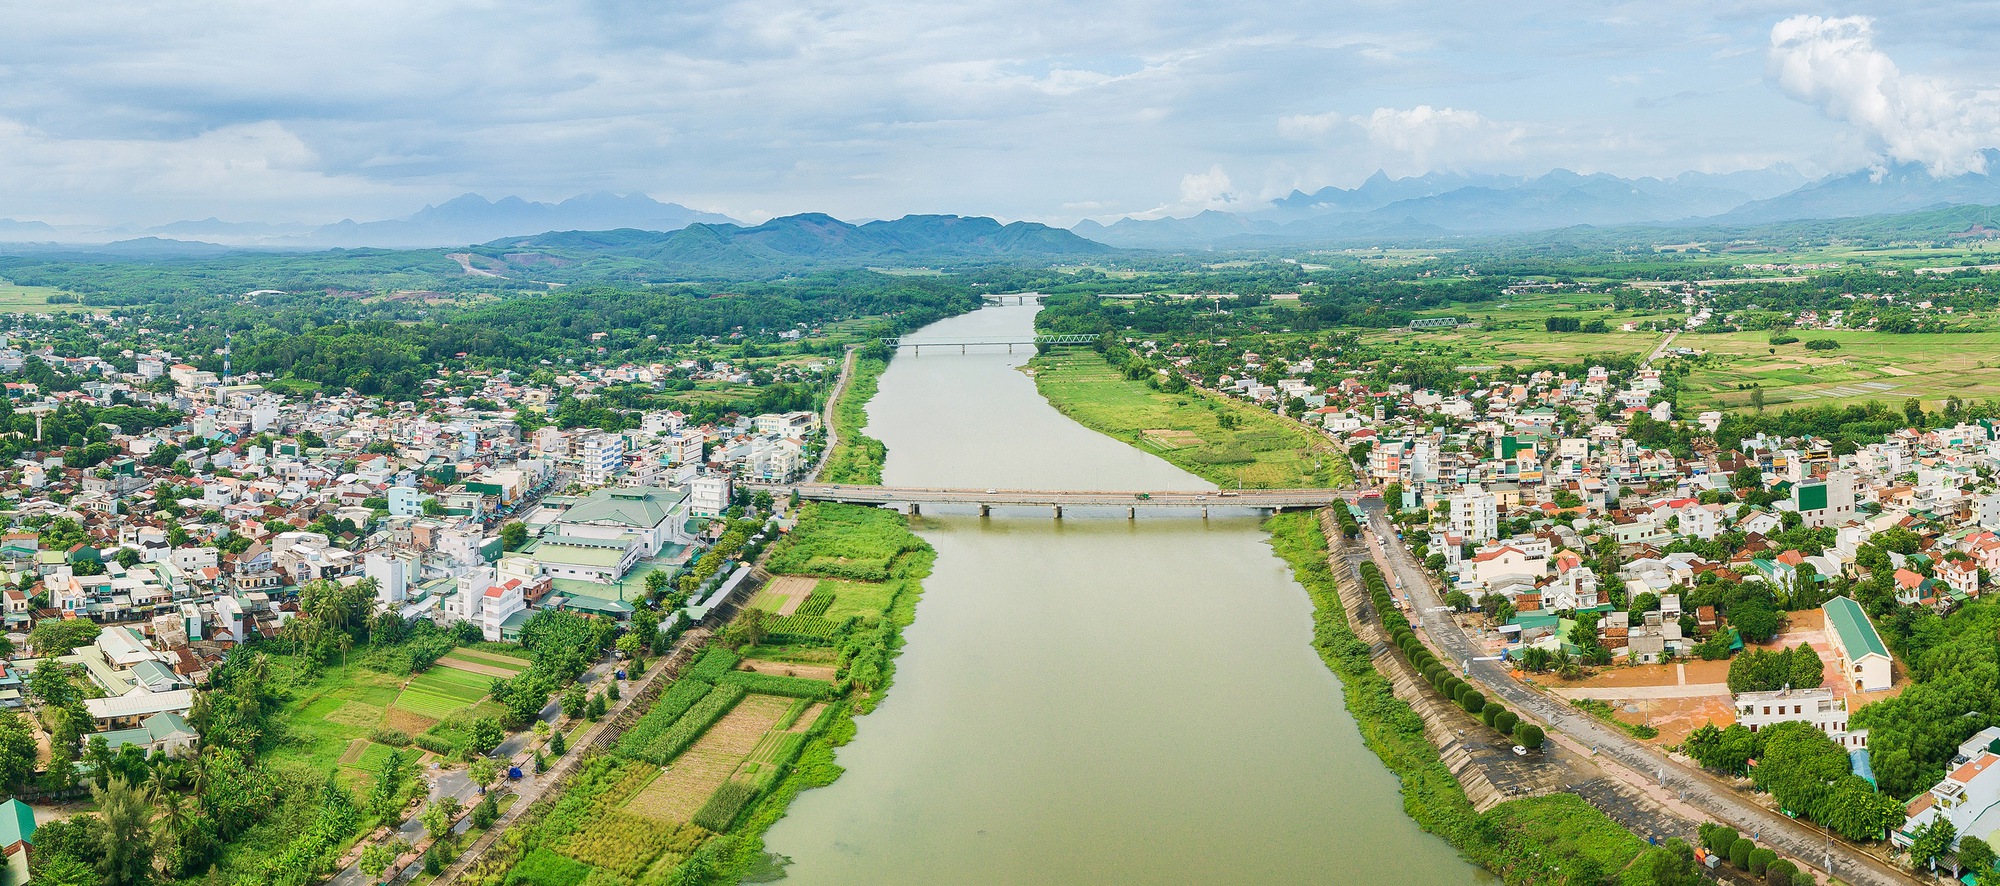 Dự án giao thông 3.500 tỷ ở Quảng Ngãi cần hàng triệu m3 vật liệu- Ảnh 3.